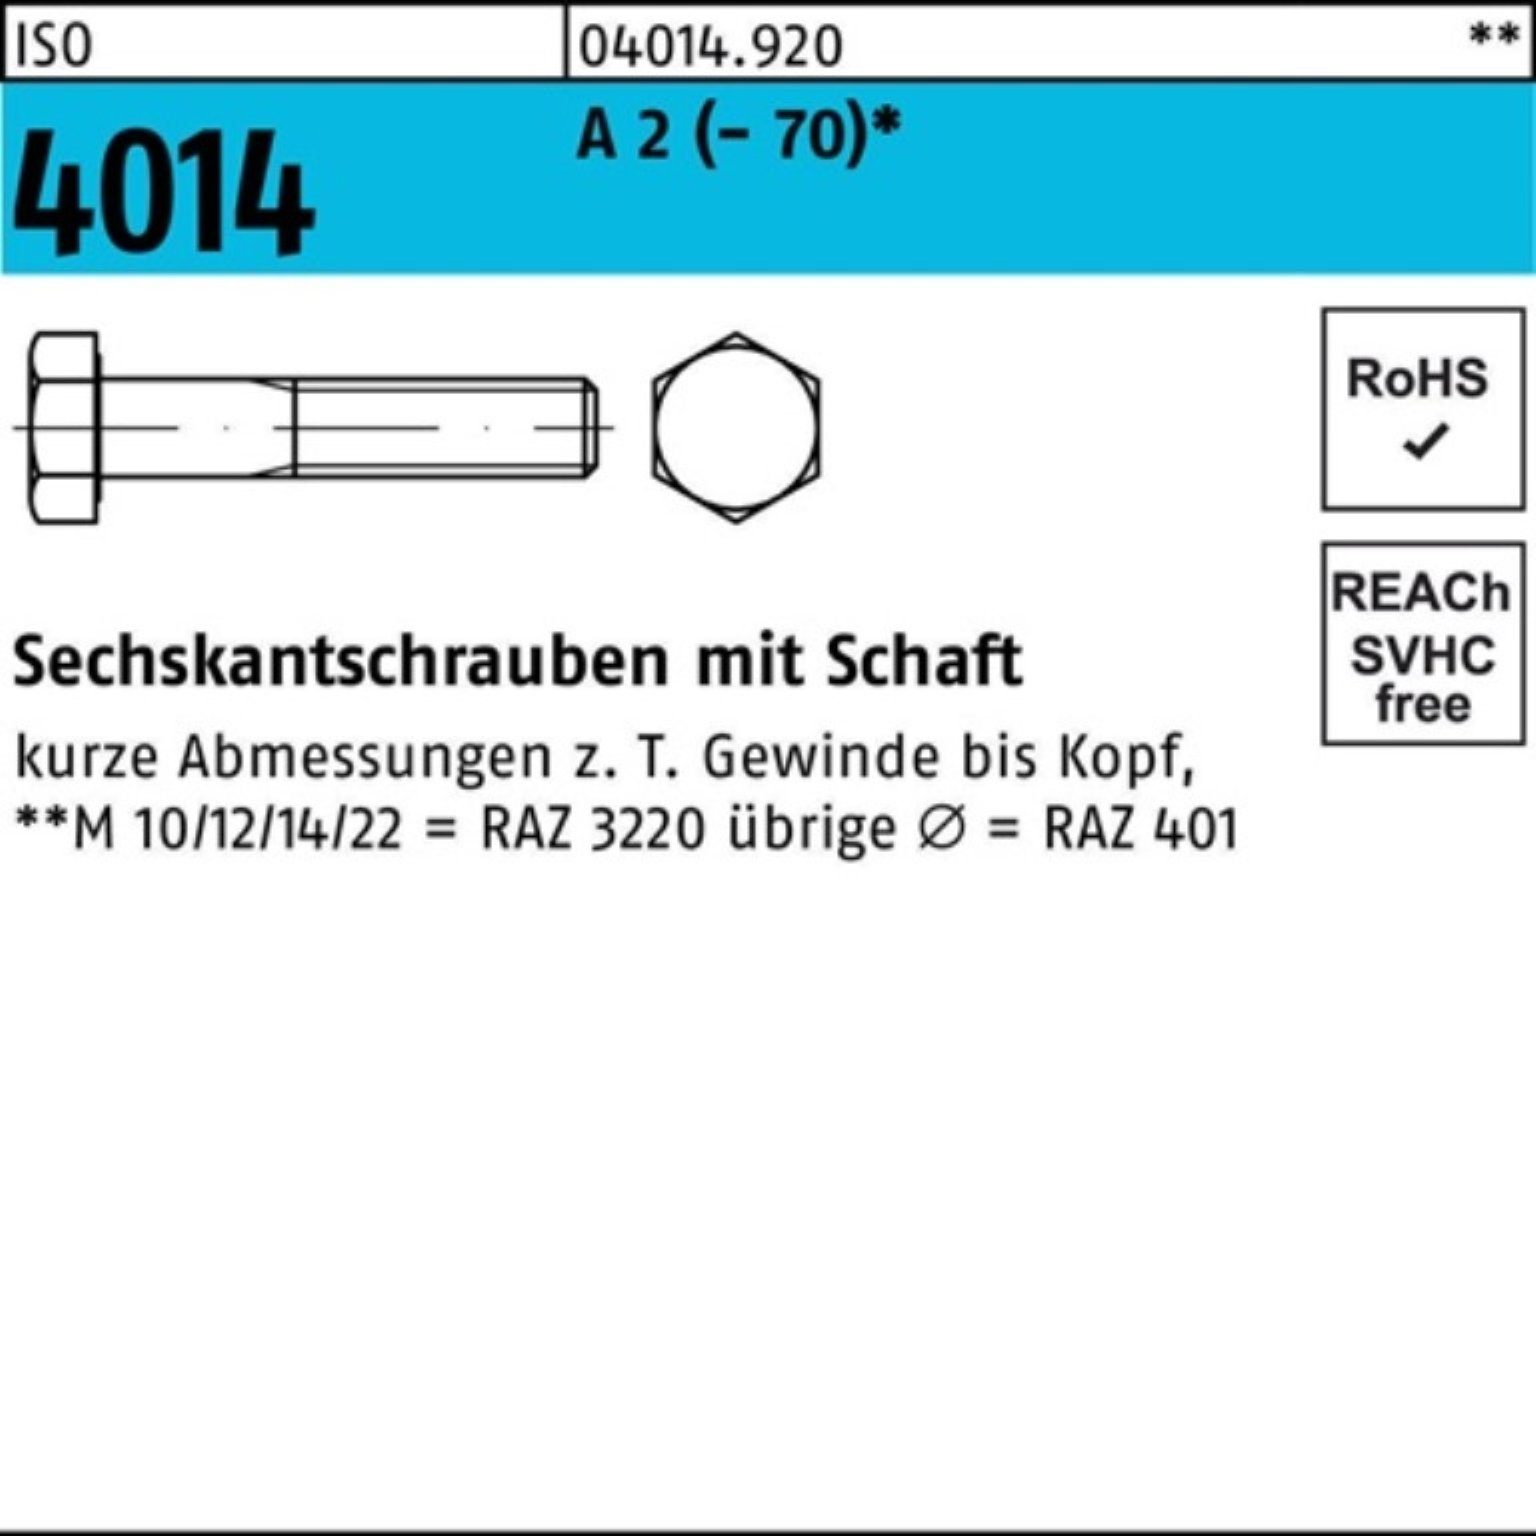 Bufab Sechskantschraube 100er Pack Sechskantschraube ISO 4014 Schaft M27x 110 A 2 (70) 1 St